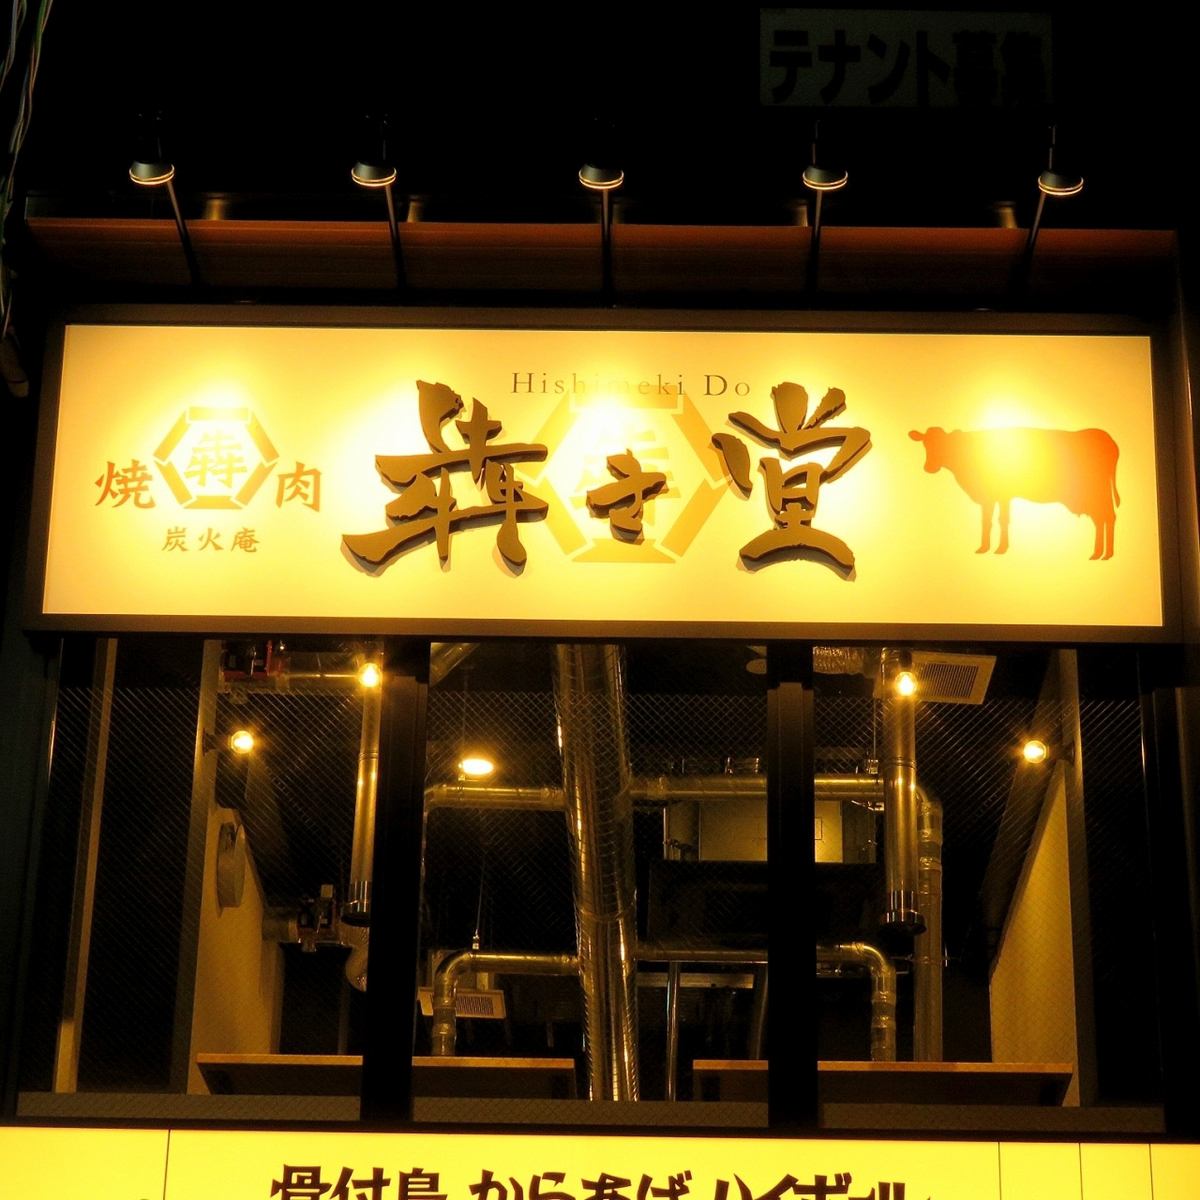 오카야마・마야마치에서 느긋하게 야키니쿠를 즐길 수 있는 가게 "숯불안 犇き堂"!